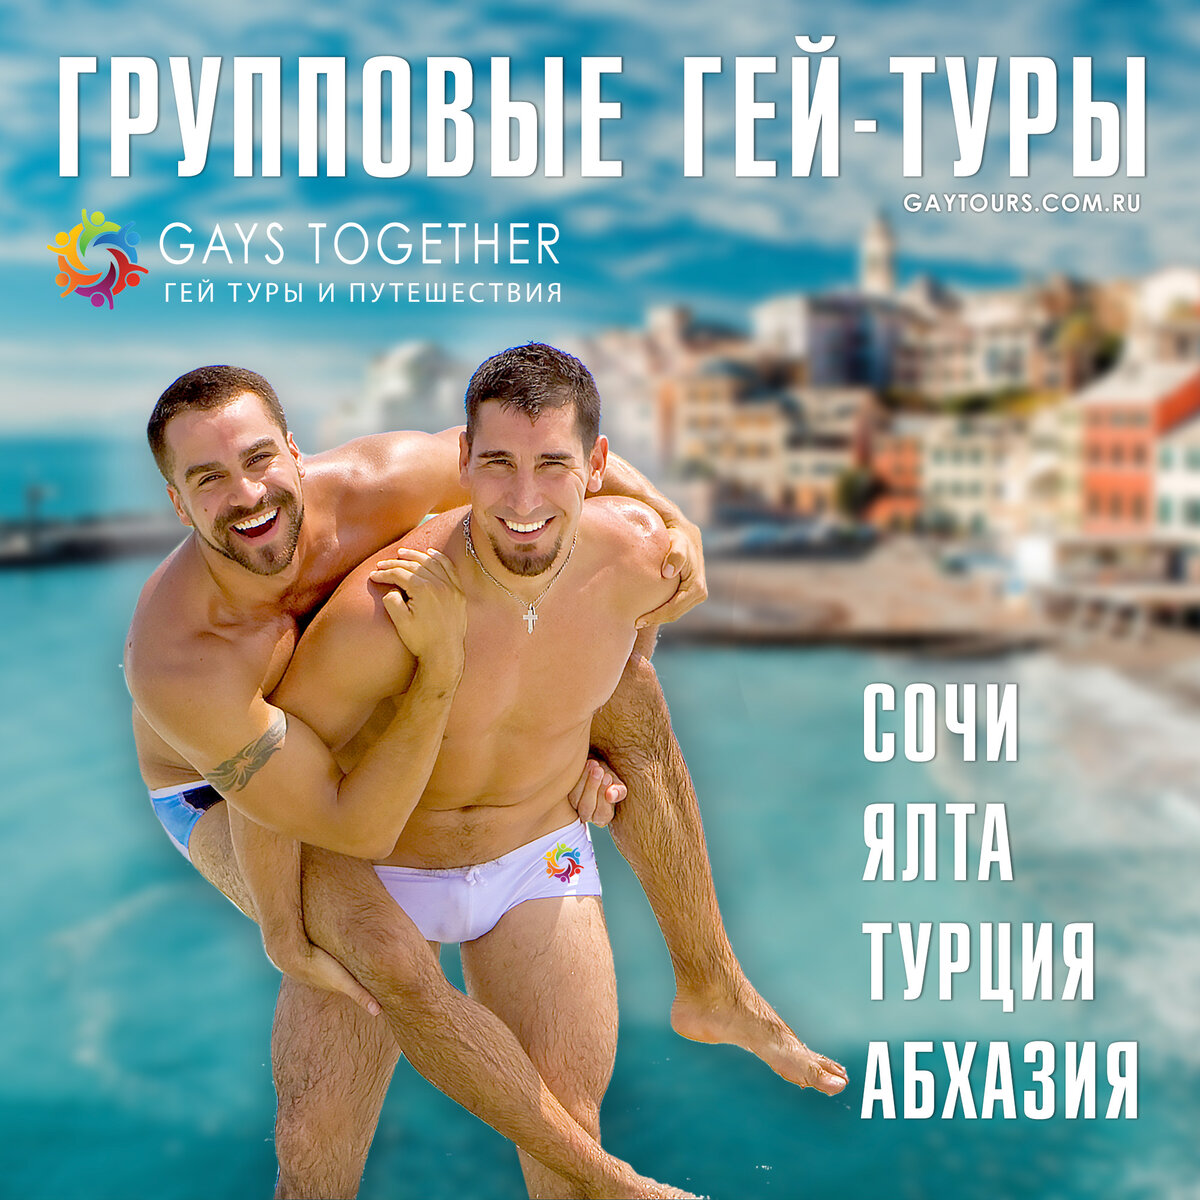 В поисках невозможного: курорты для геев - автонагаз55.рф